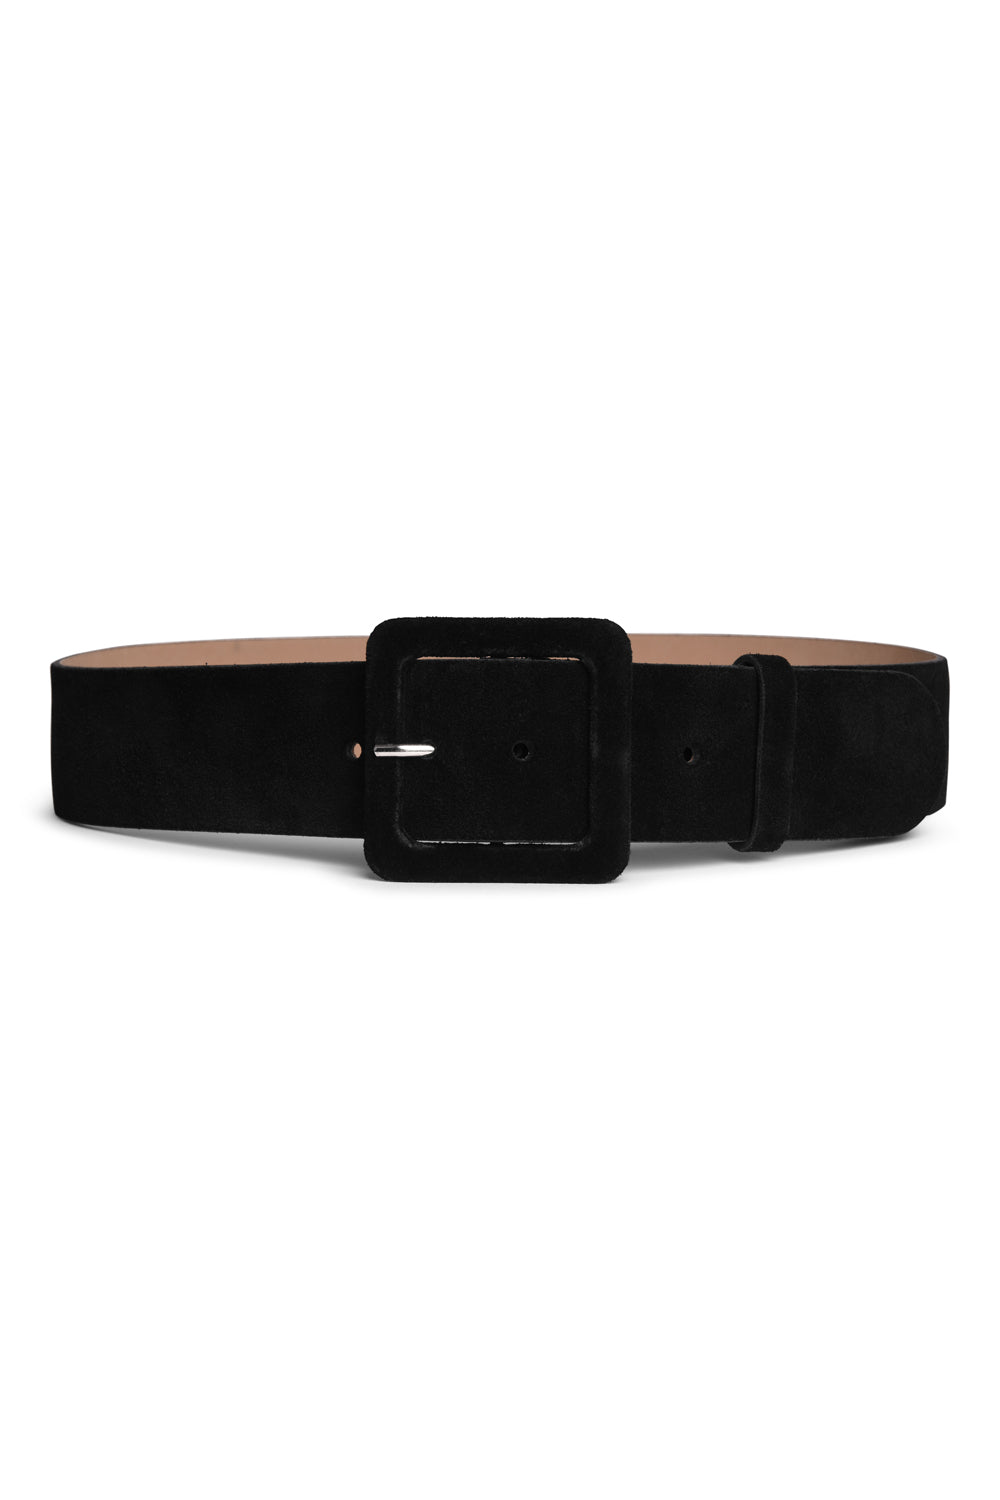 Suede Leather Waist Belt (Black)